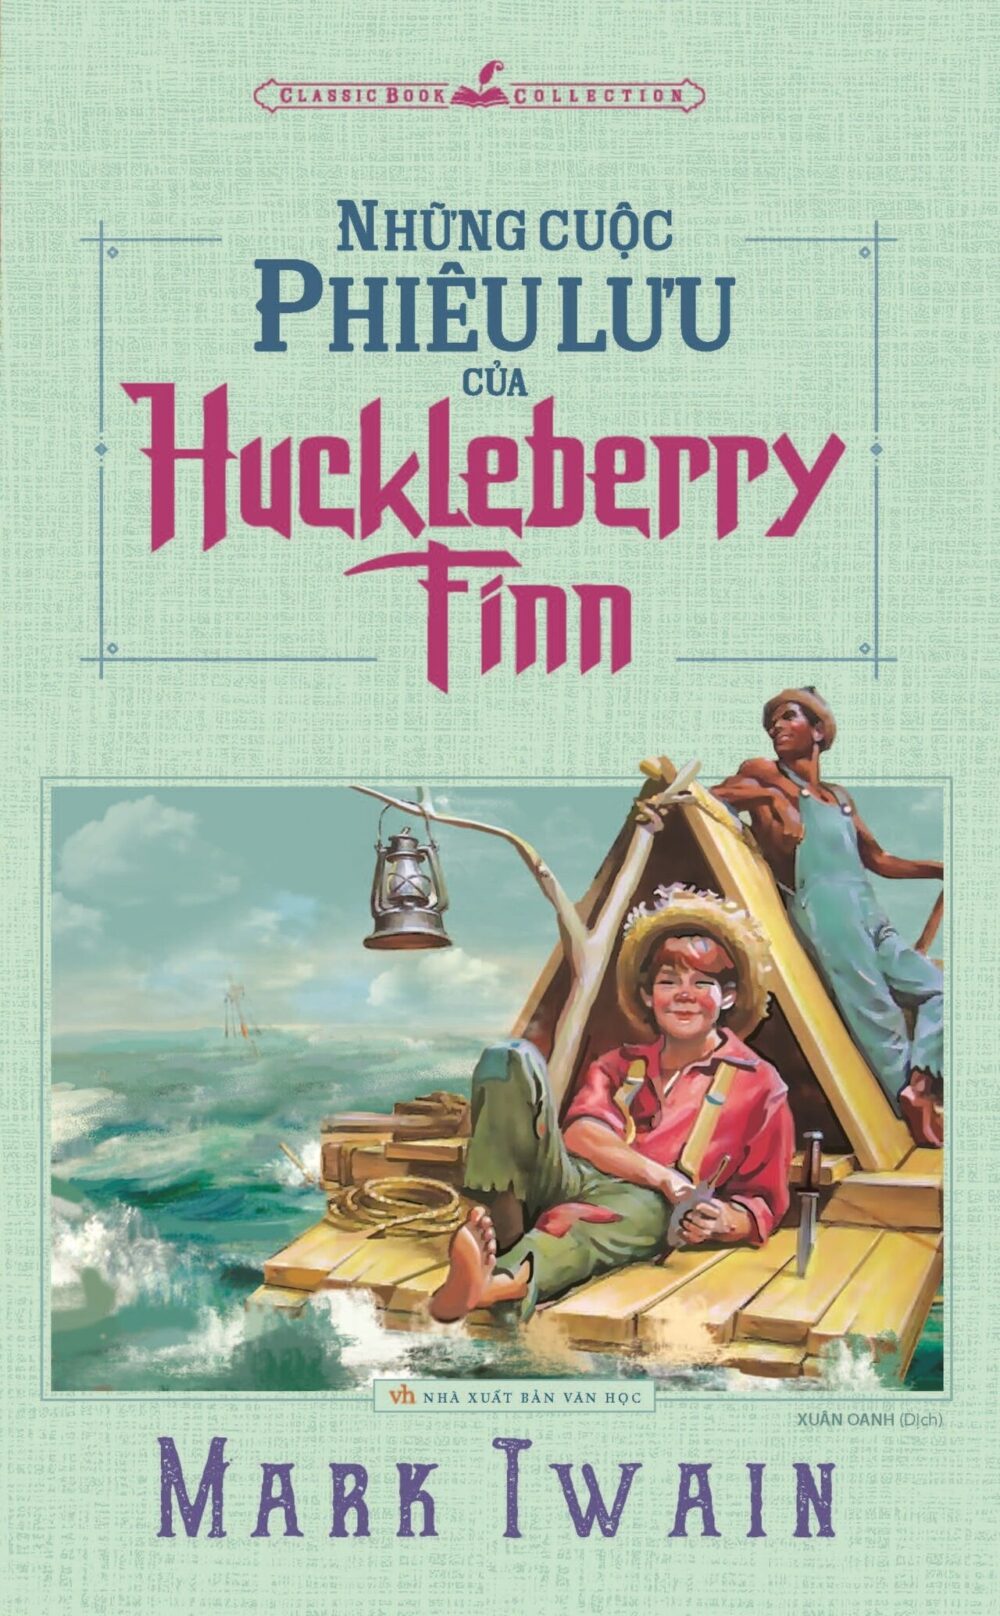 bia sach nhung cuoc phieu luu cua huck e1609947344441 - Những cuộc phiêu lưu của Huckleberry Finn: Hành trình đi tìm giá trị con người